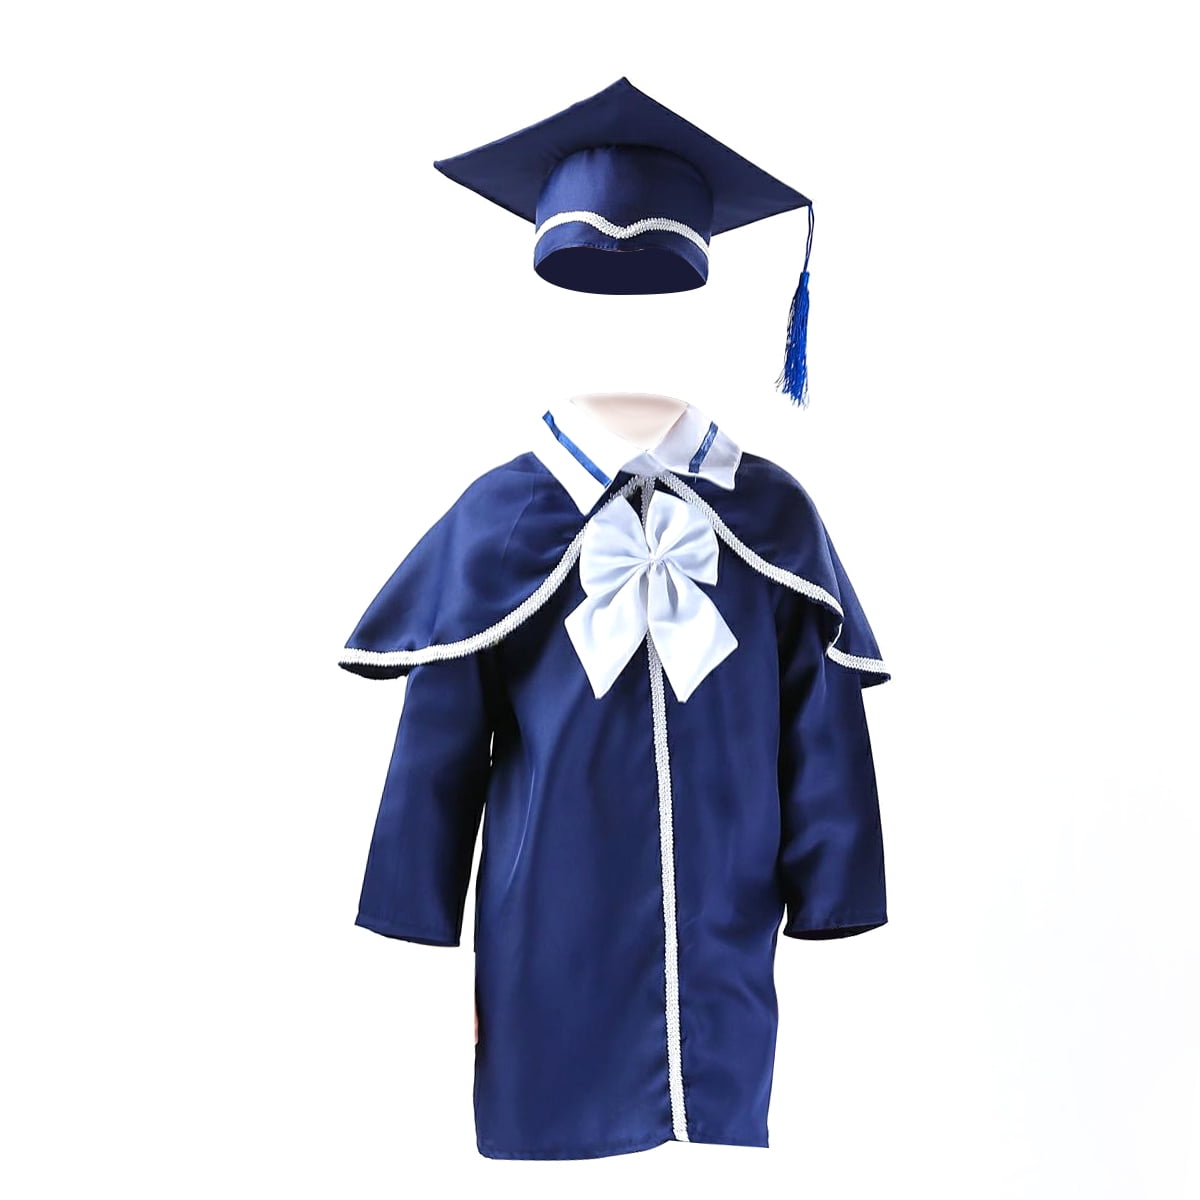 DIY Toddler Graduation Cap - YouTube